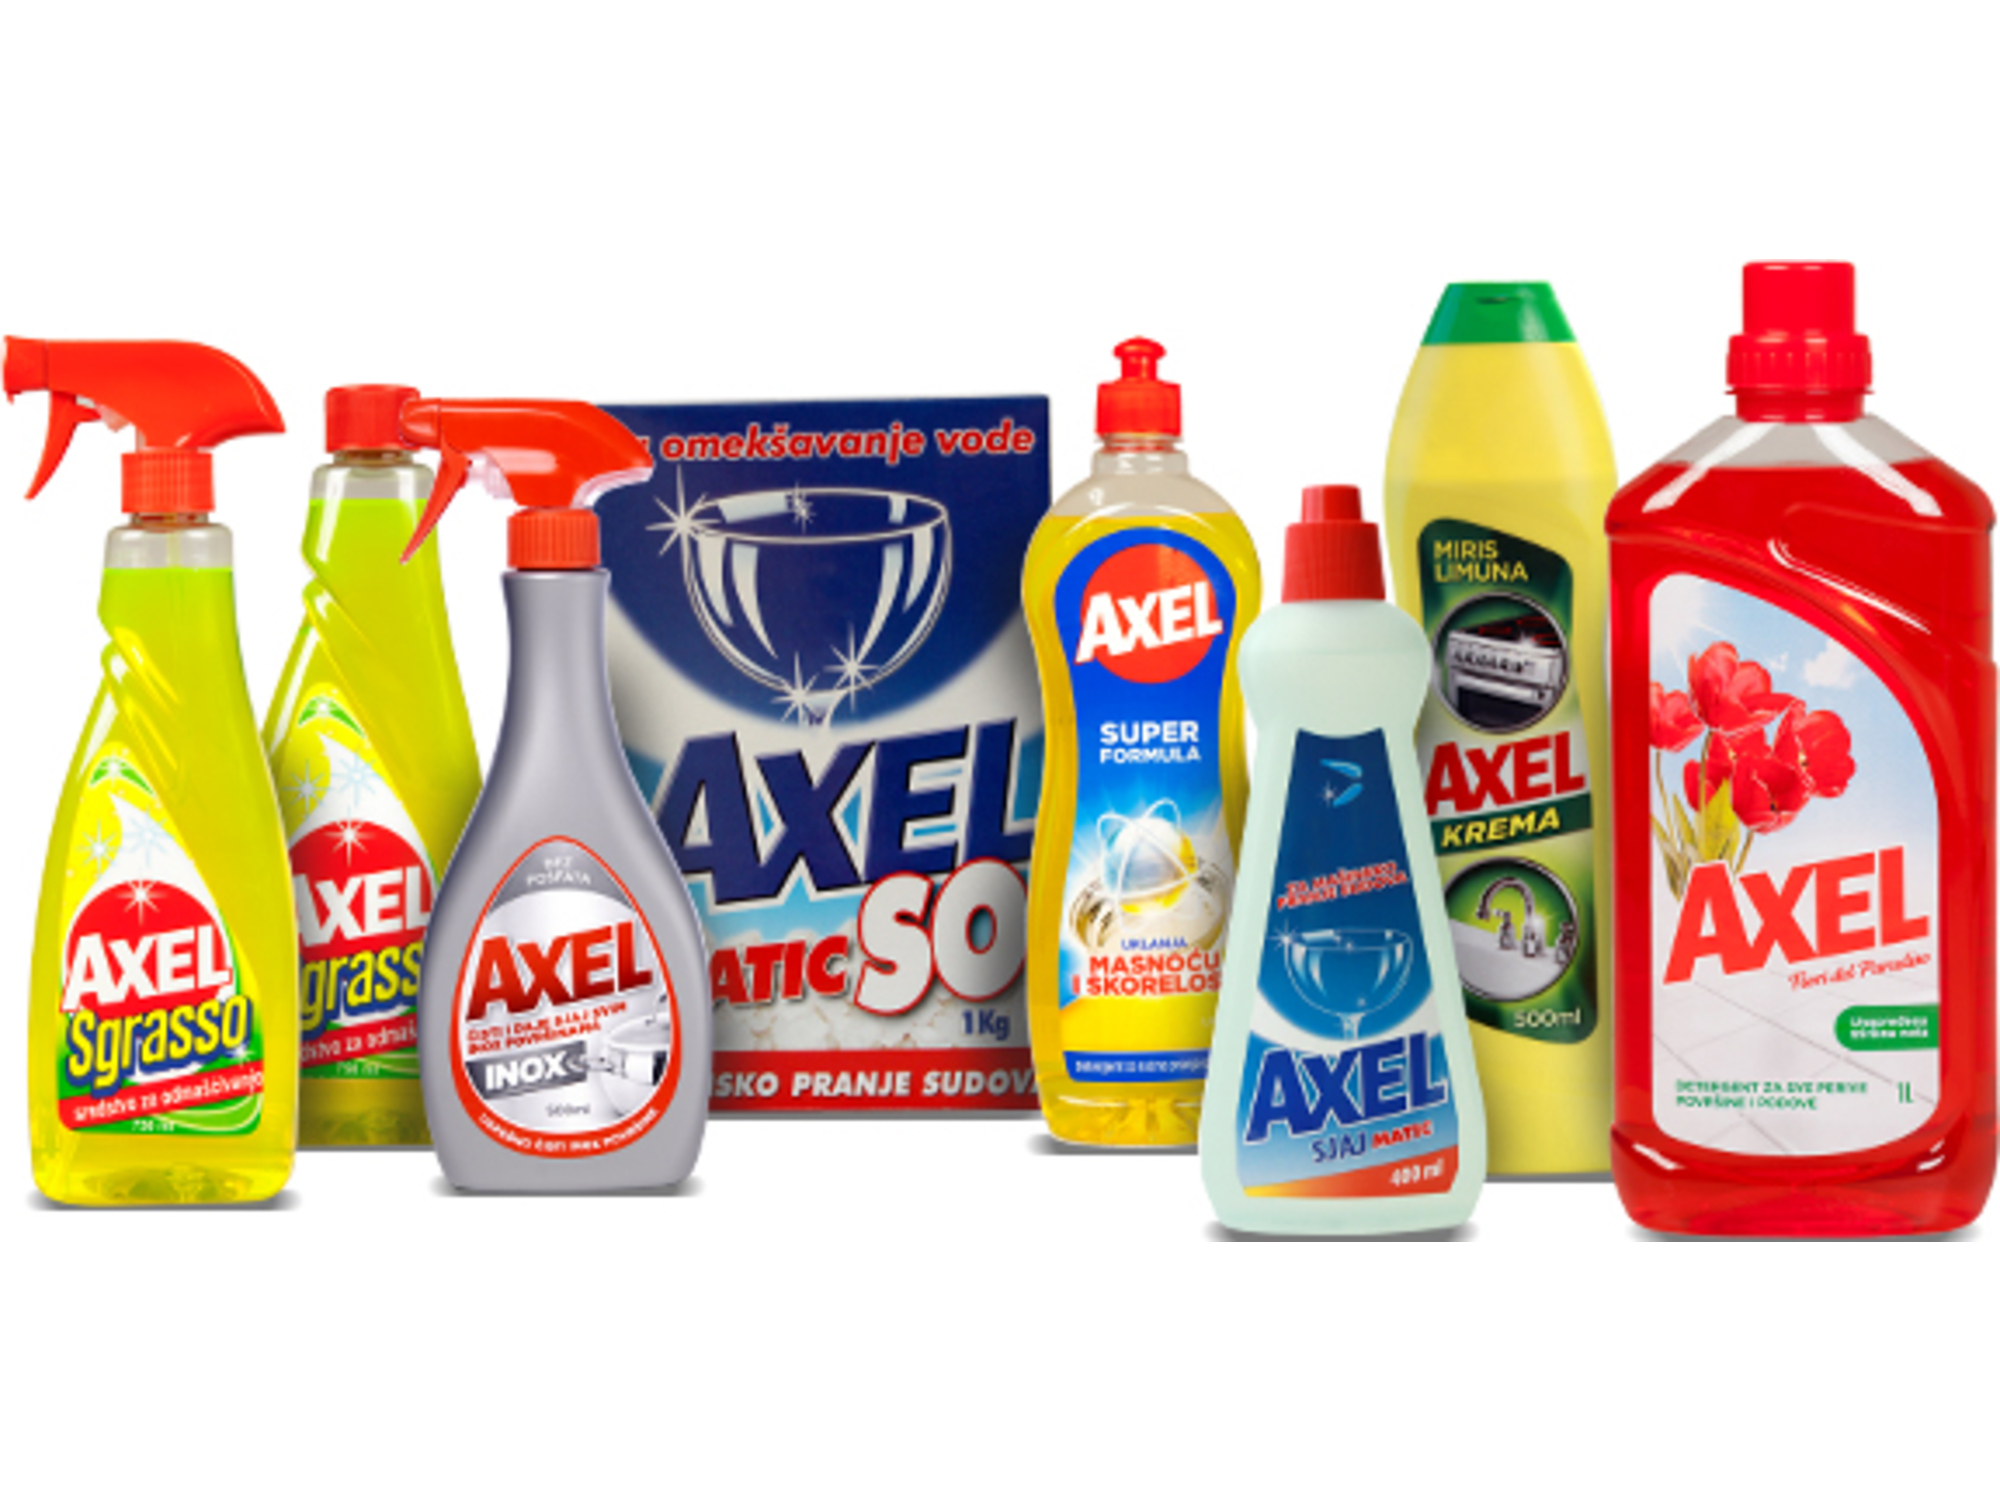 Axel Set proizvoda za čišćenje kuhinje